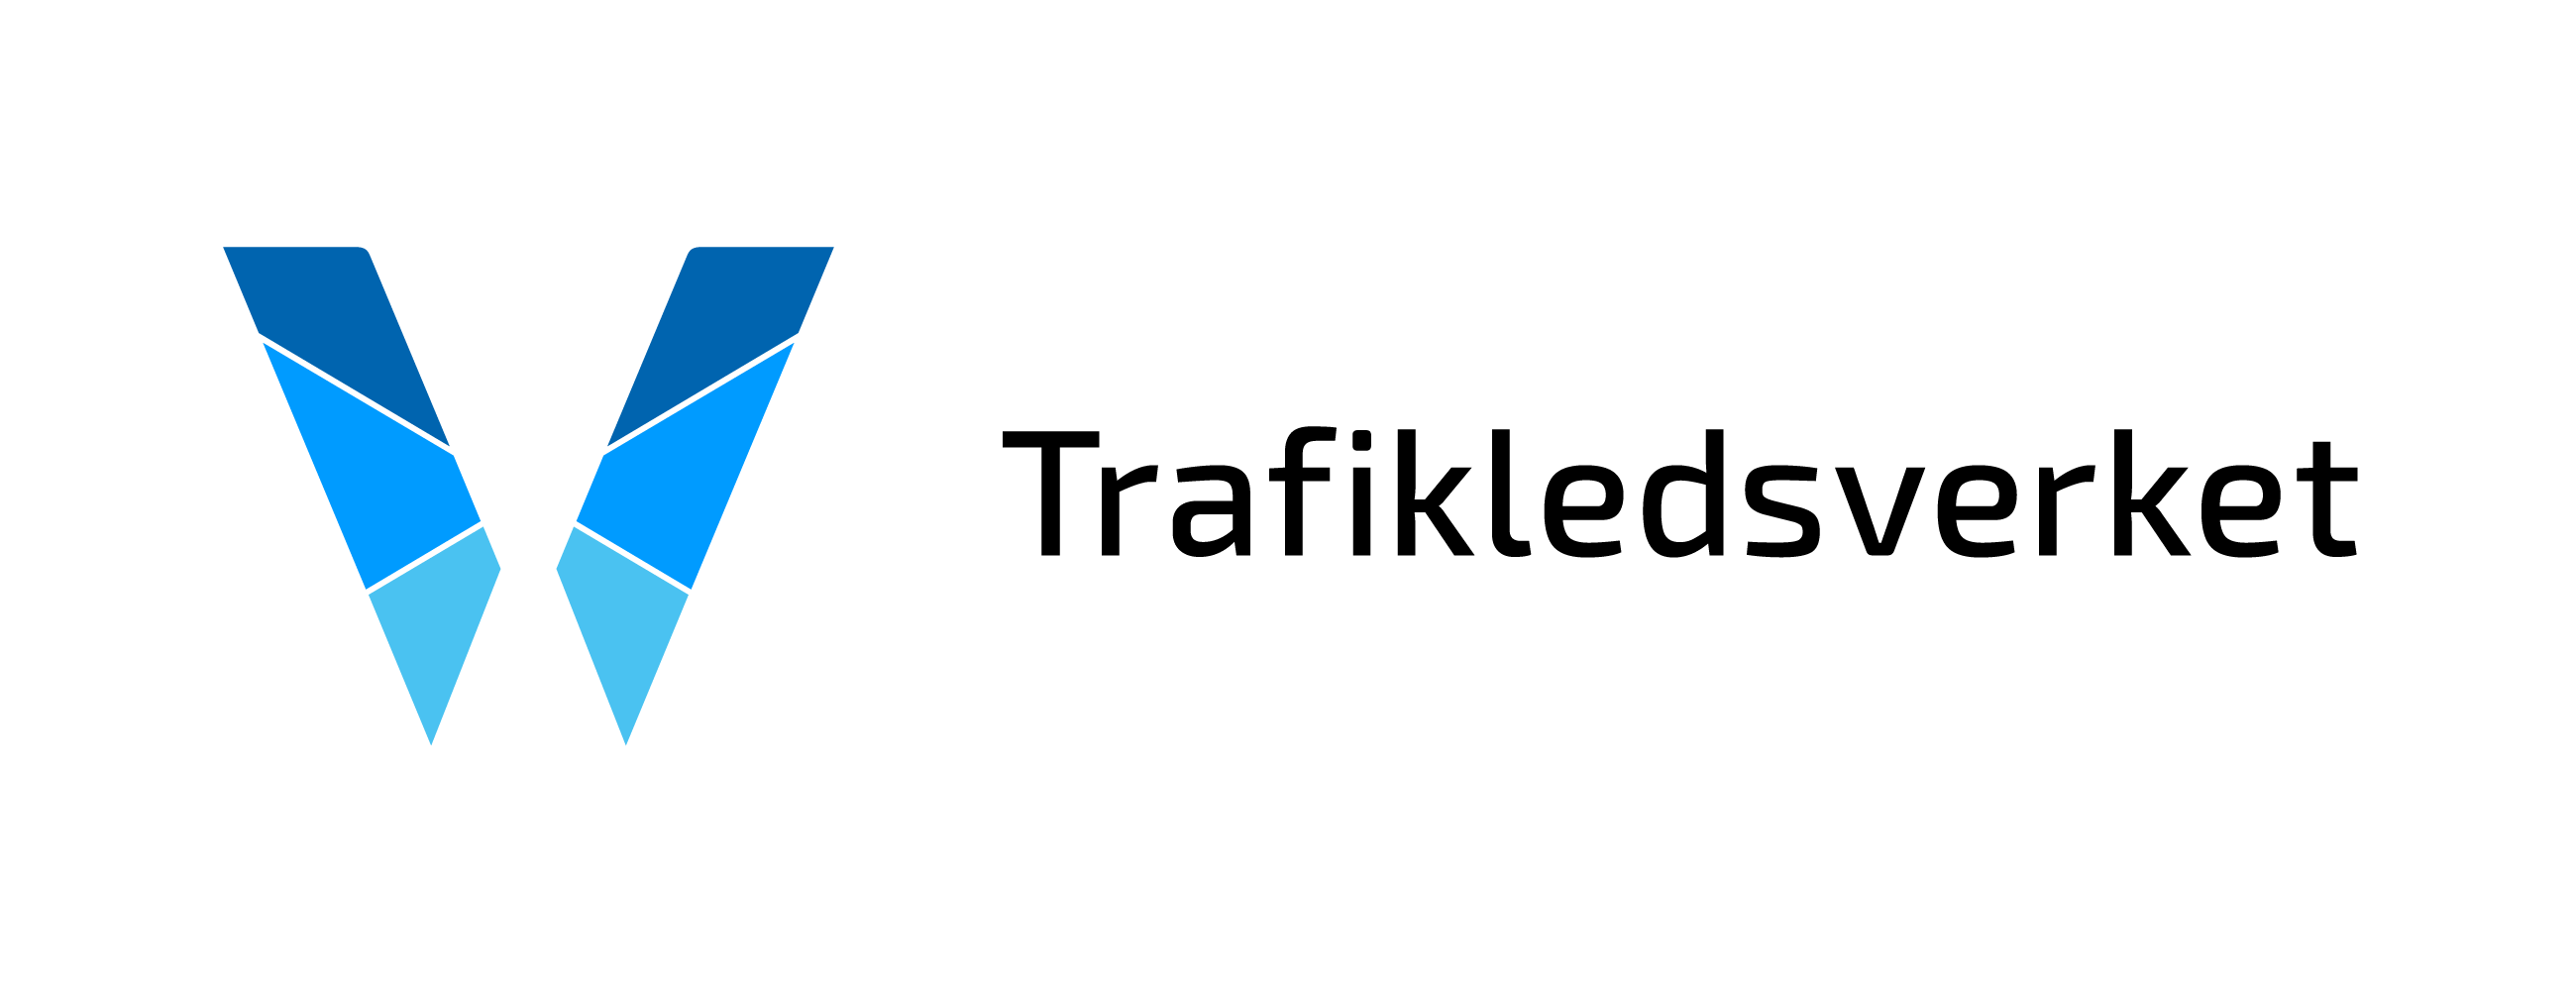 Väylävirasto logo